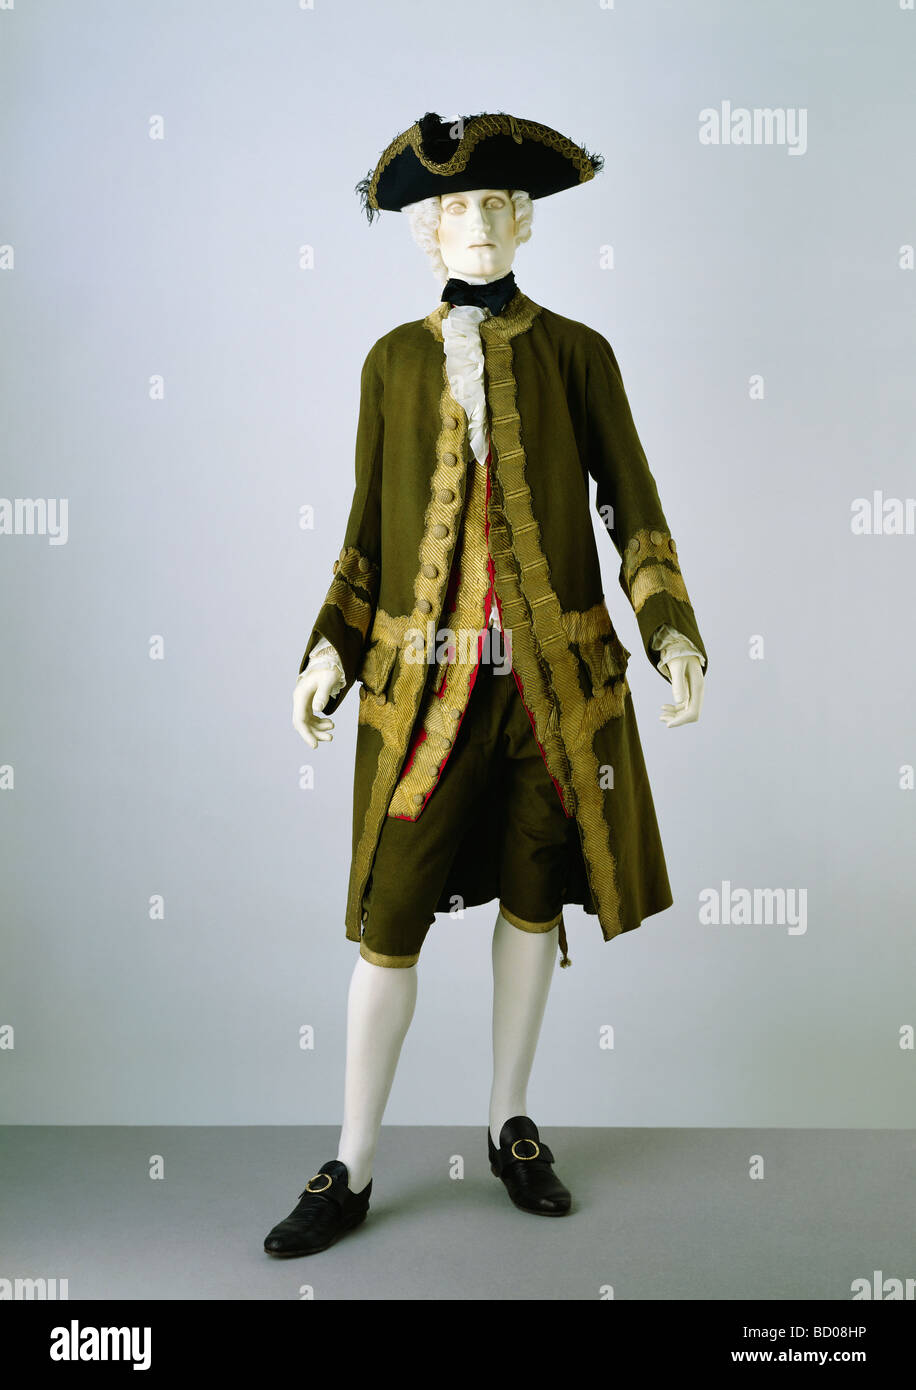 Manteau, pantalon et gilet. Angleterre, 18e siècle Banque D'Images